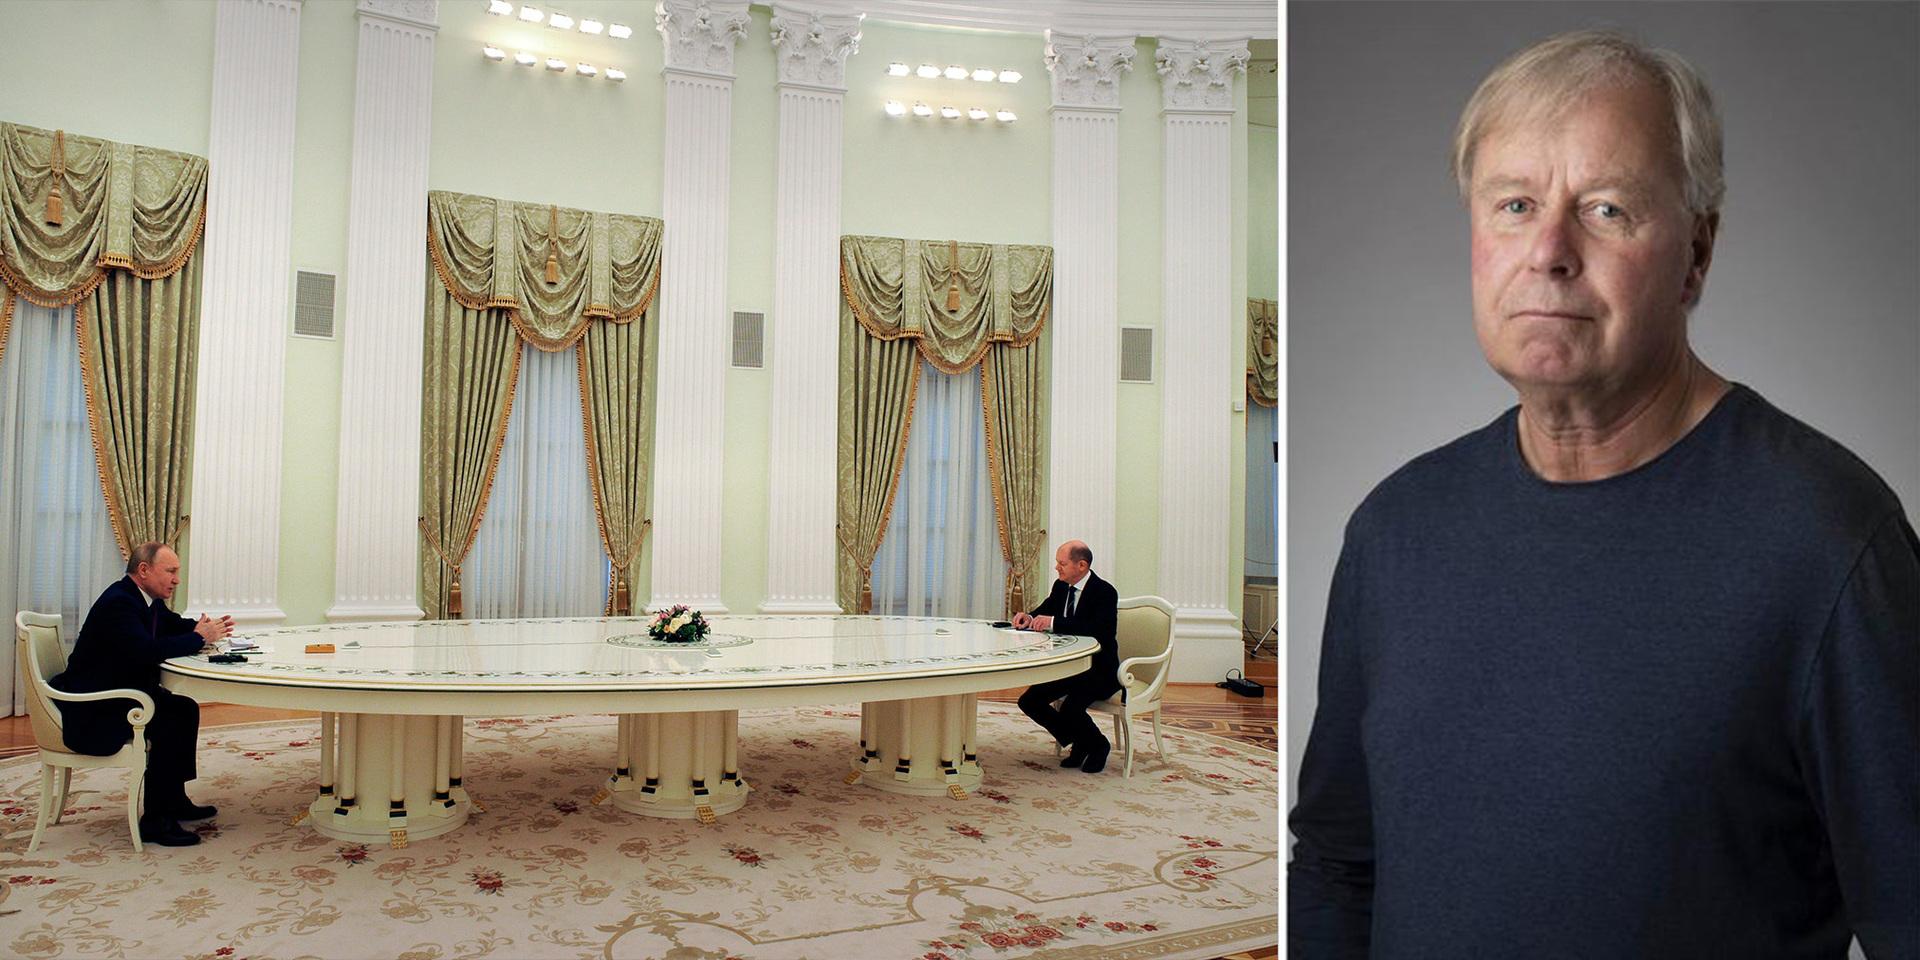 Ryssland president Vladimir Putin och Tysklands förbundskansler Olaf Scholz i Kreml vid det stora bordet som symboliserar distansen mellan öst och väst i konflikten.